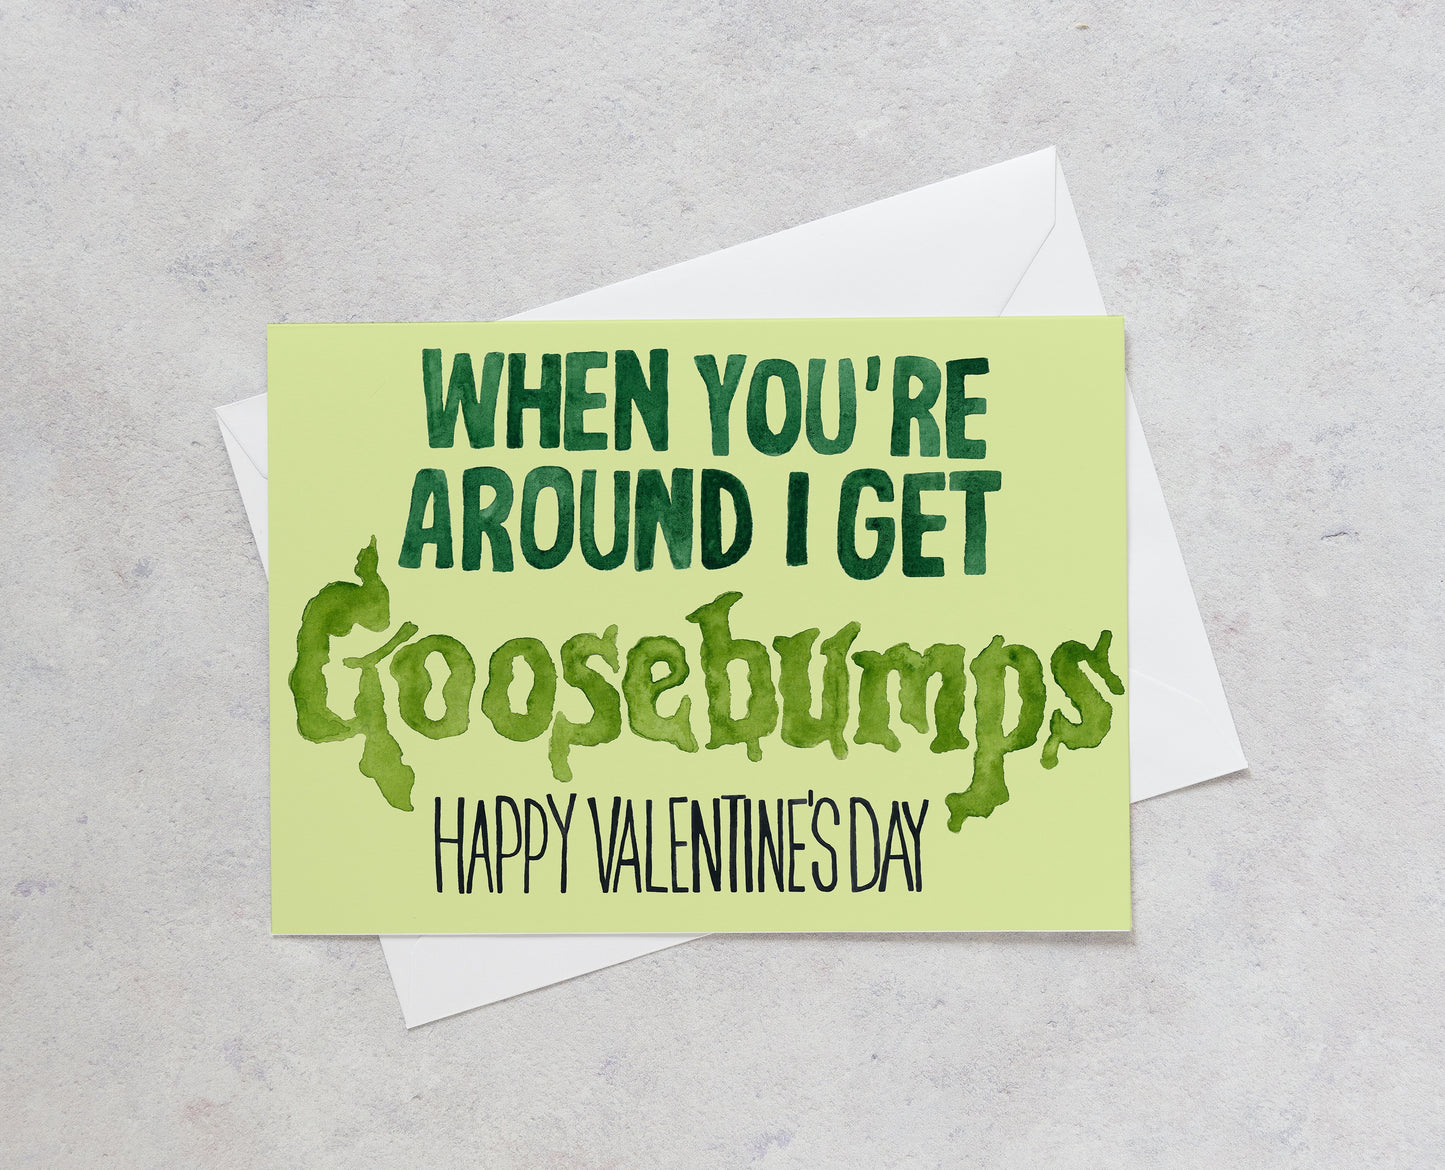 Goosebumps - Valentine's Day Card